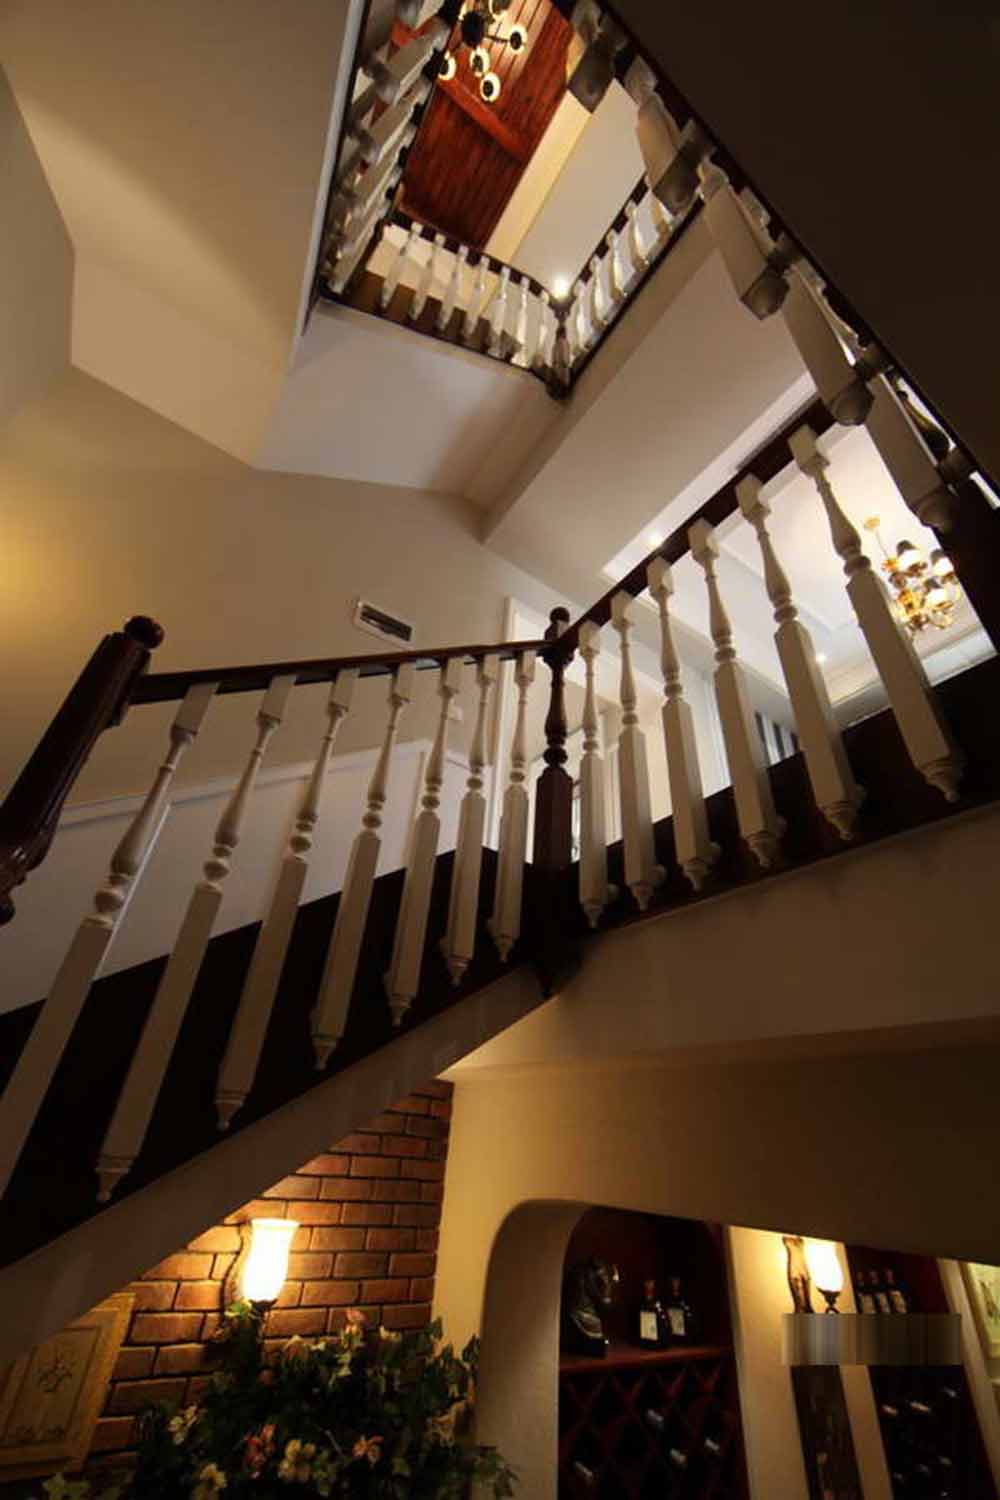 简明有型的楼梯设计，在美式风格的基础上创造了独特的立体空间。